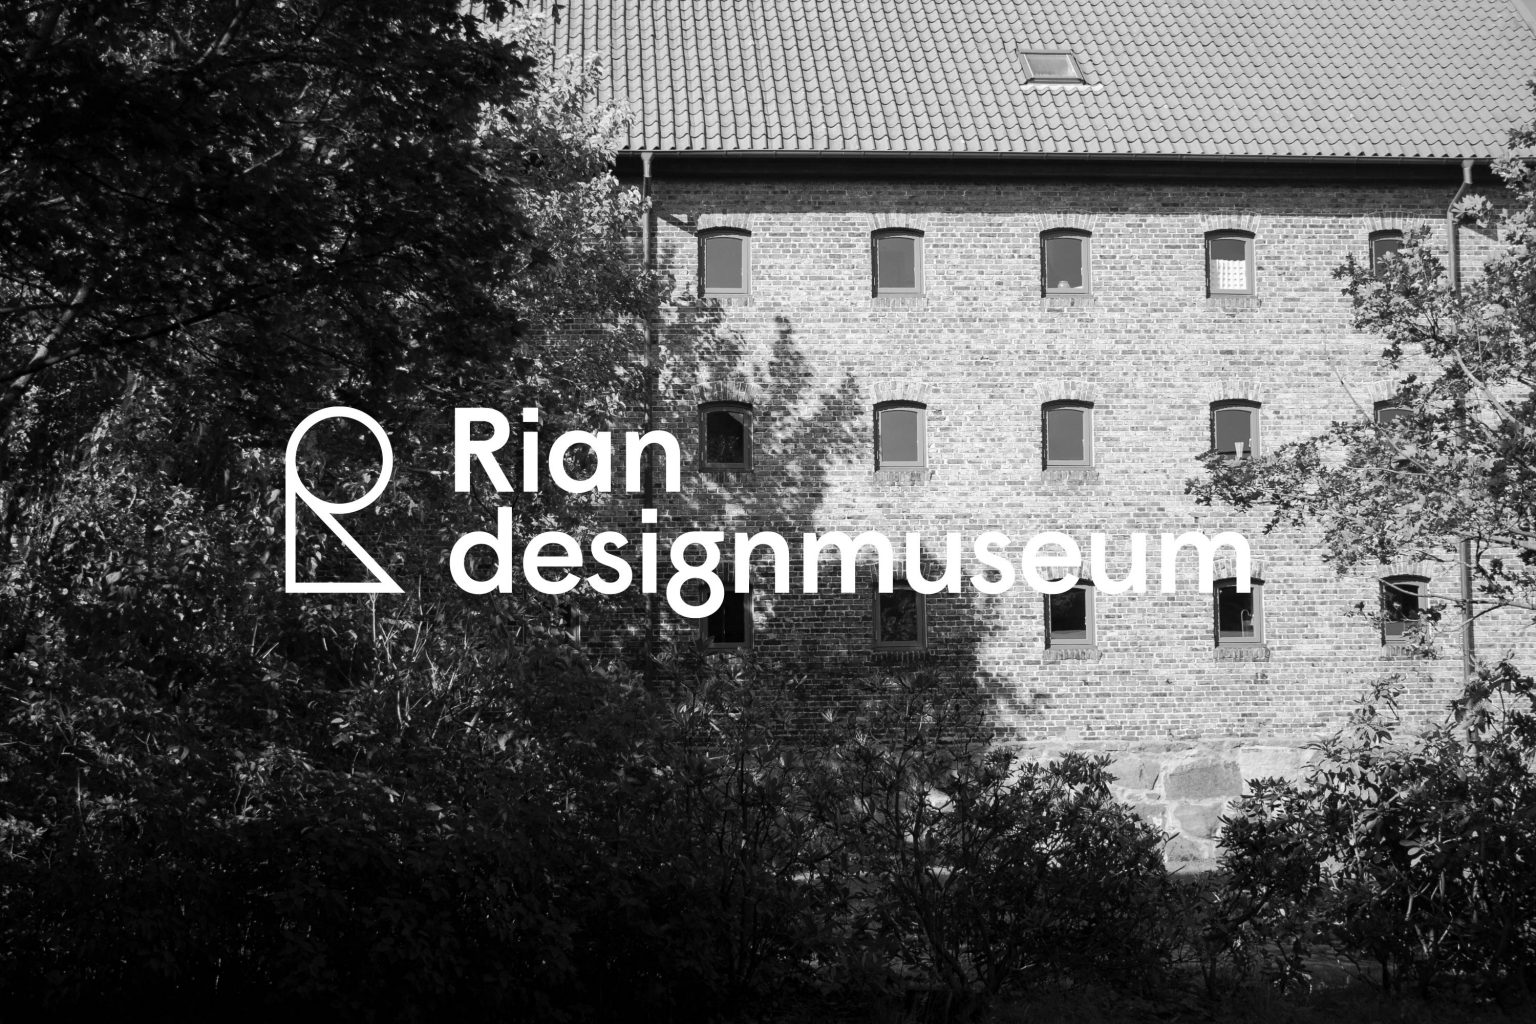 Rian designmuseum